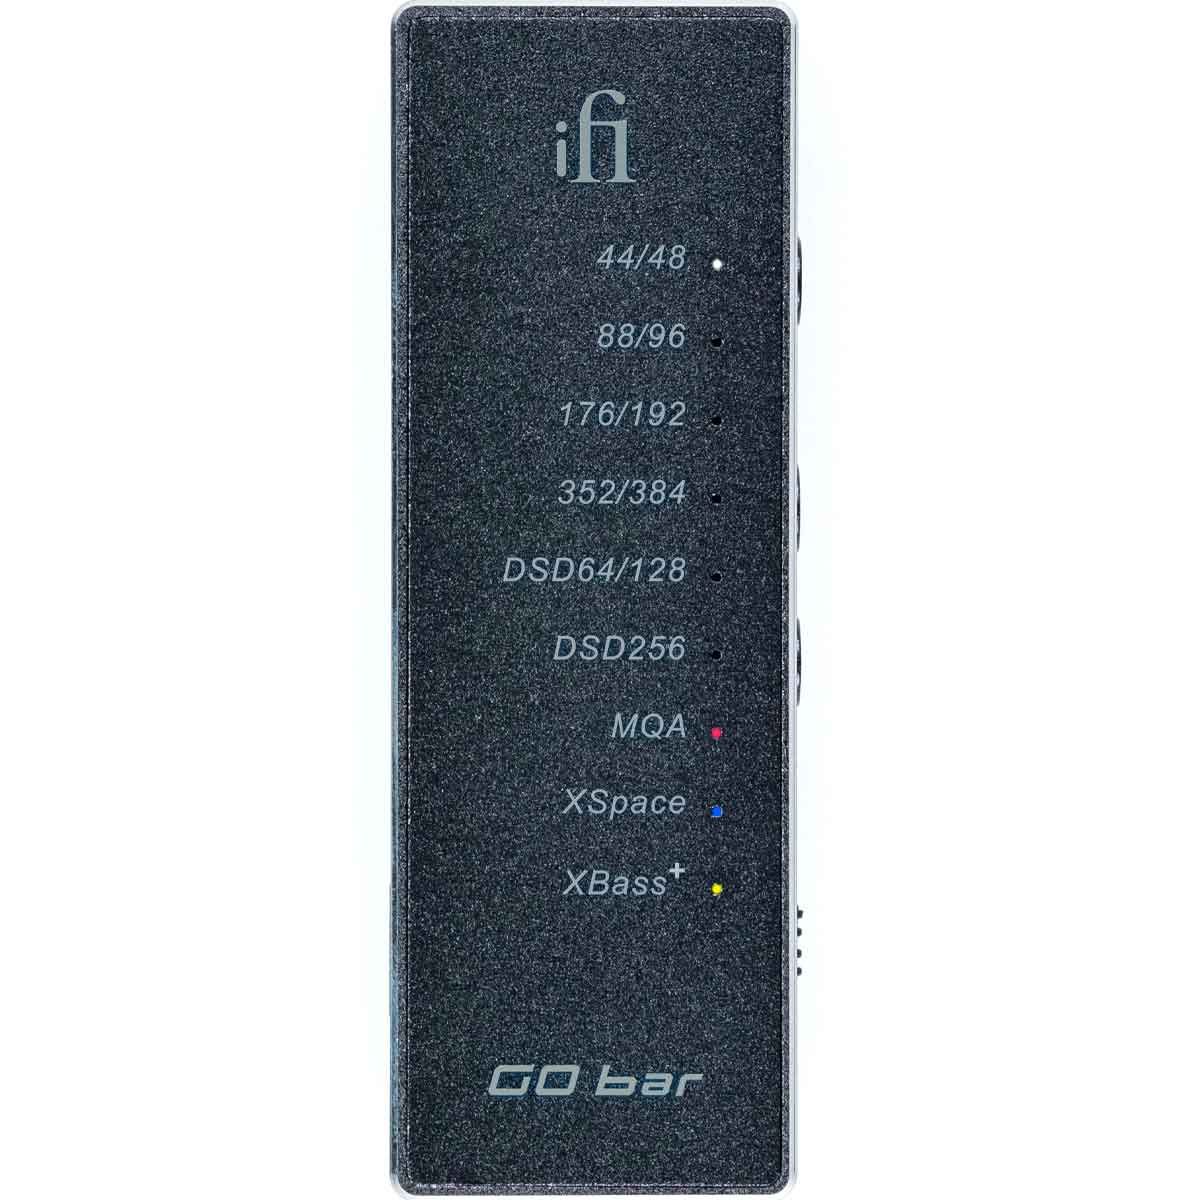 iFi GO Bar Portable Headphone Amp & DAC - rear view